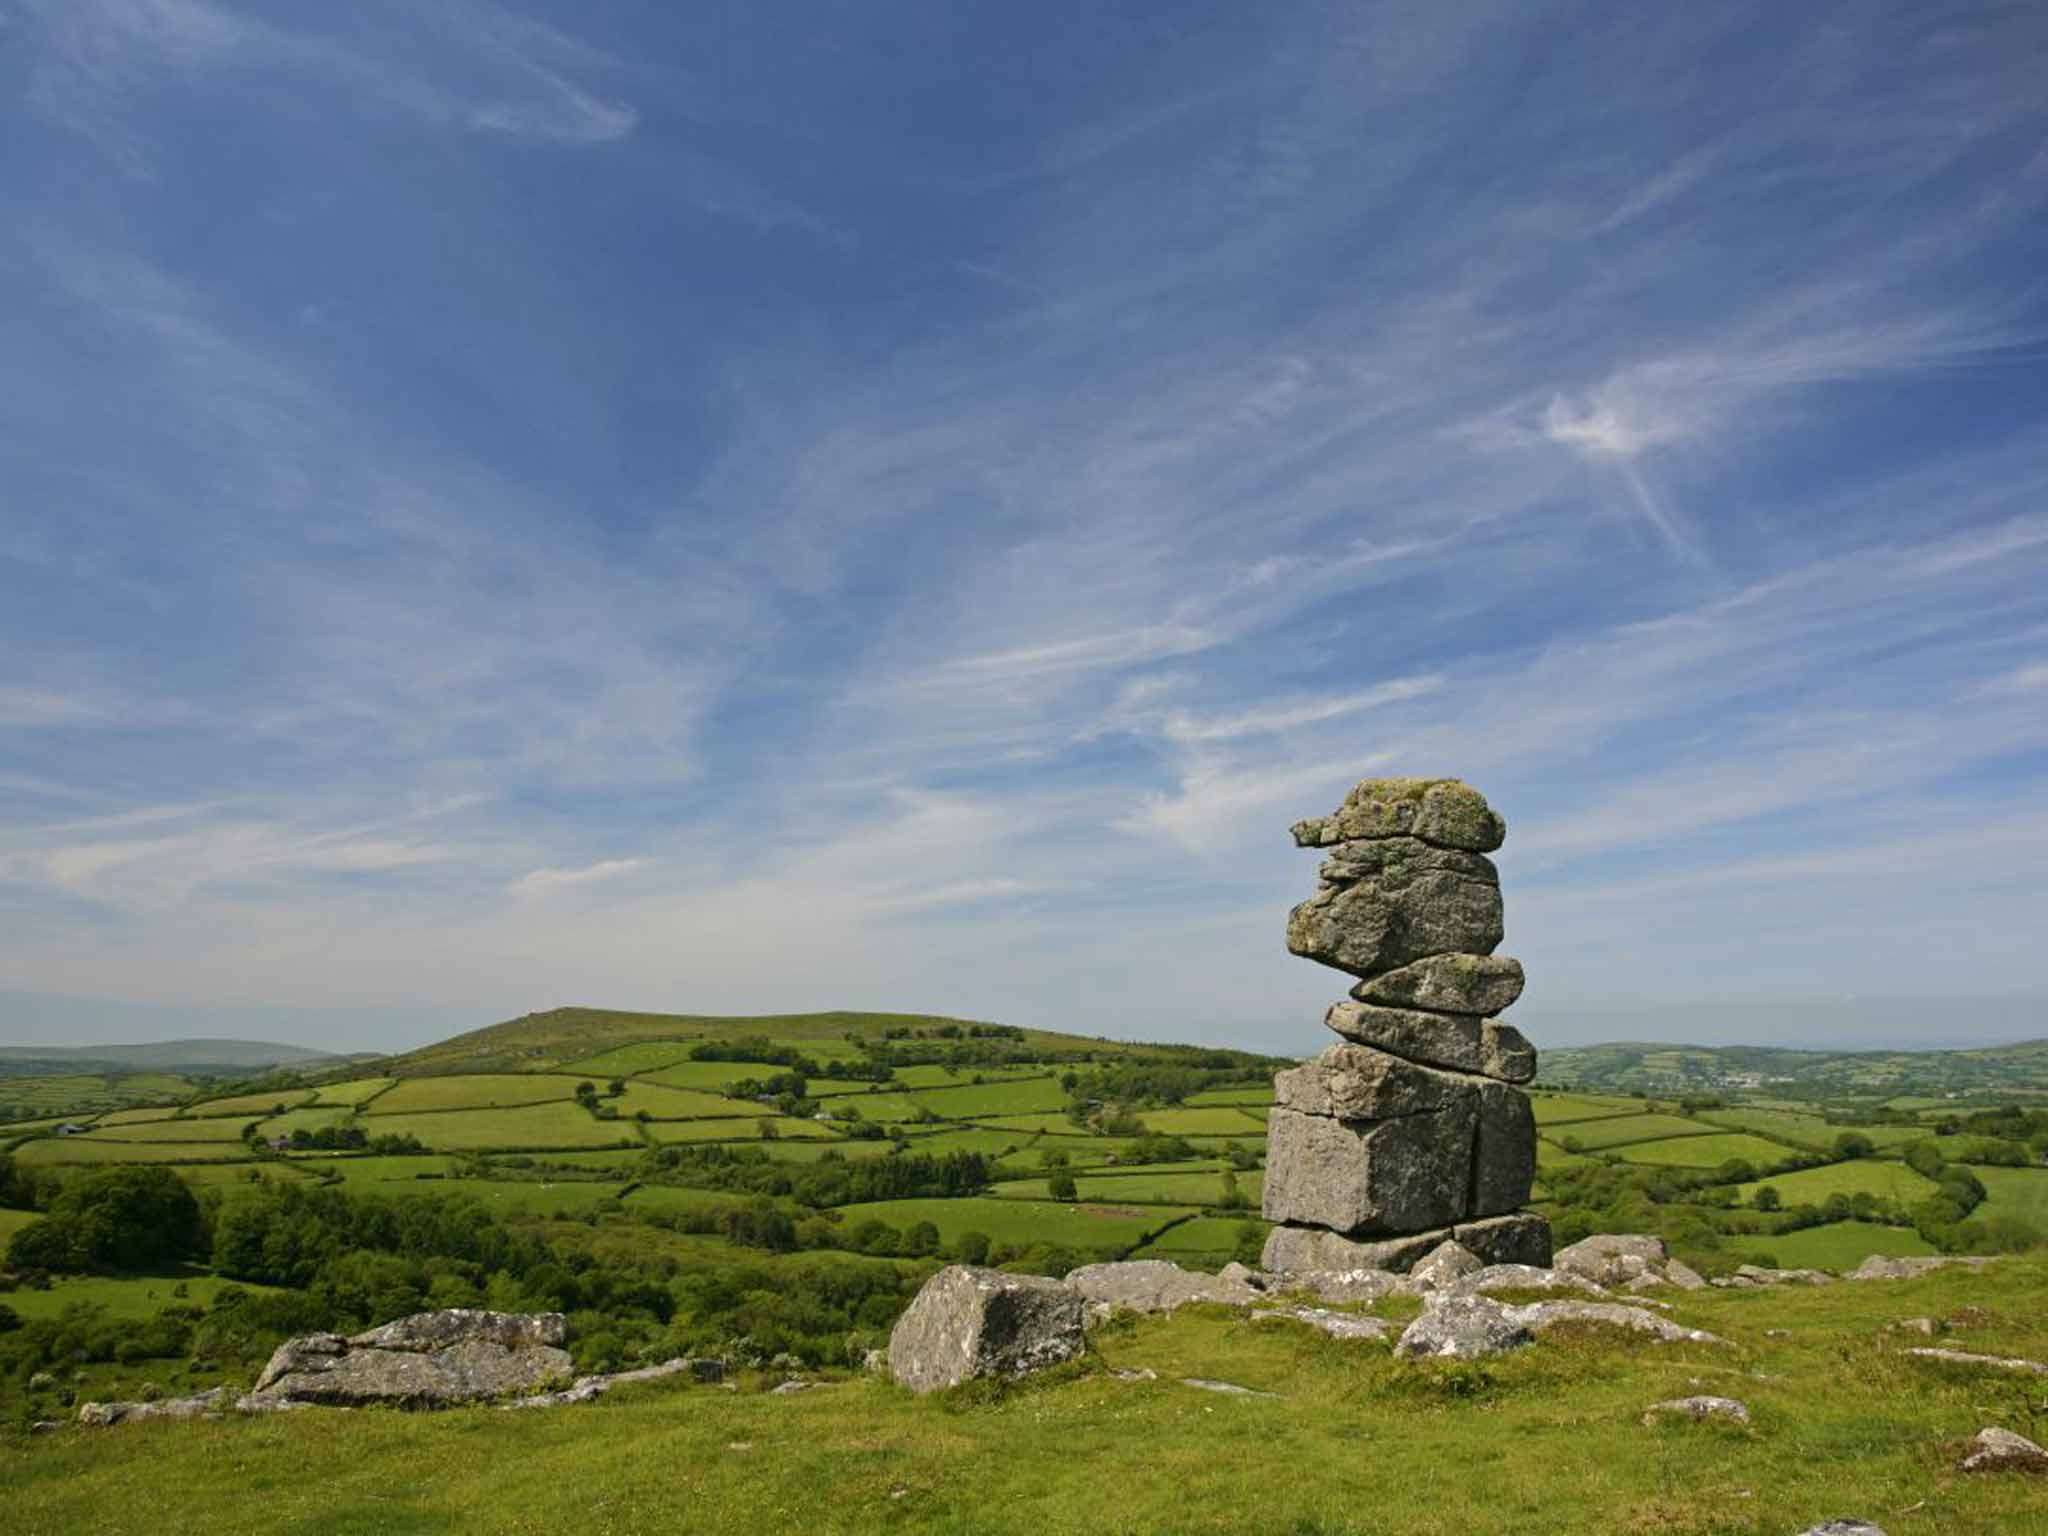 Bowerman's Nose, a granite Dartmoor landmark